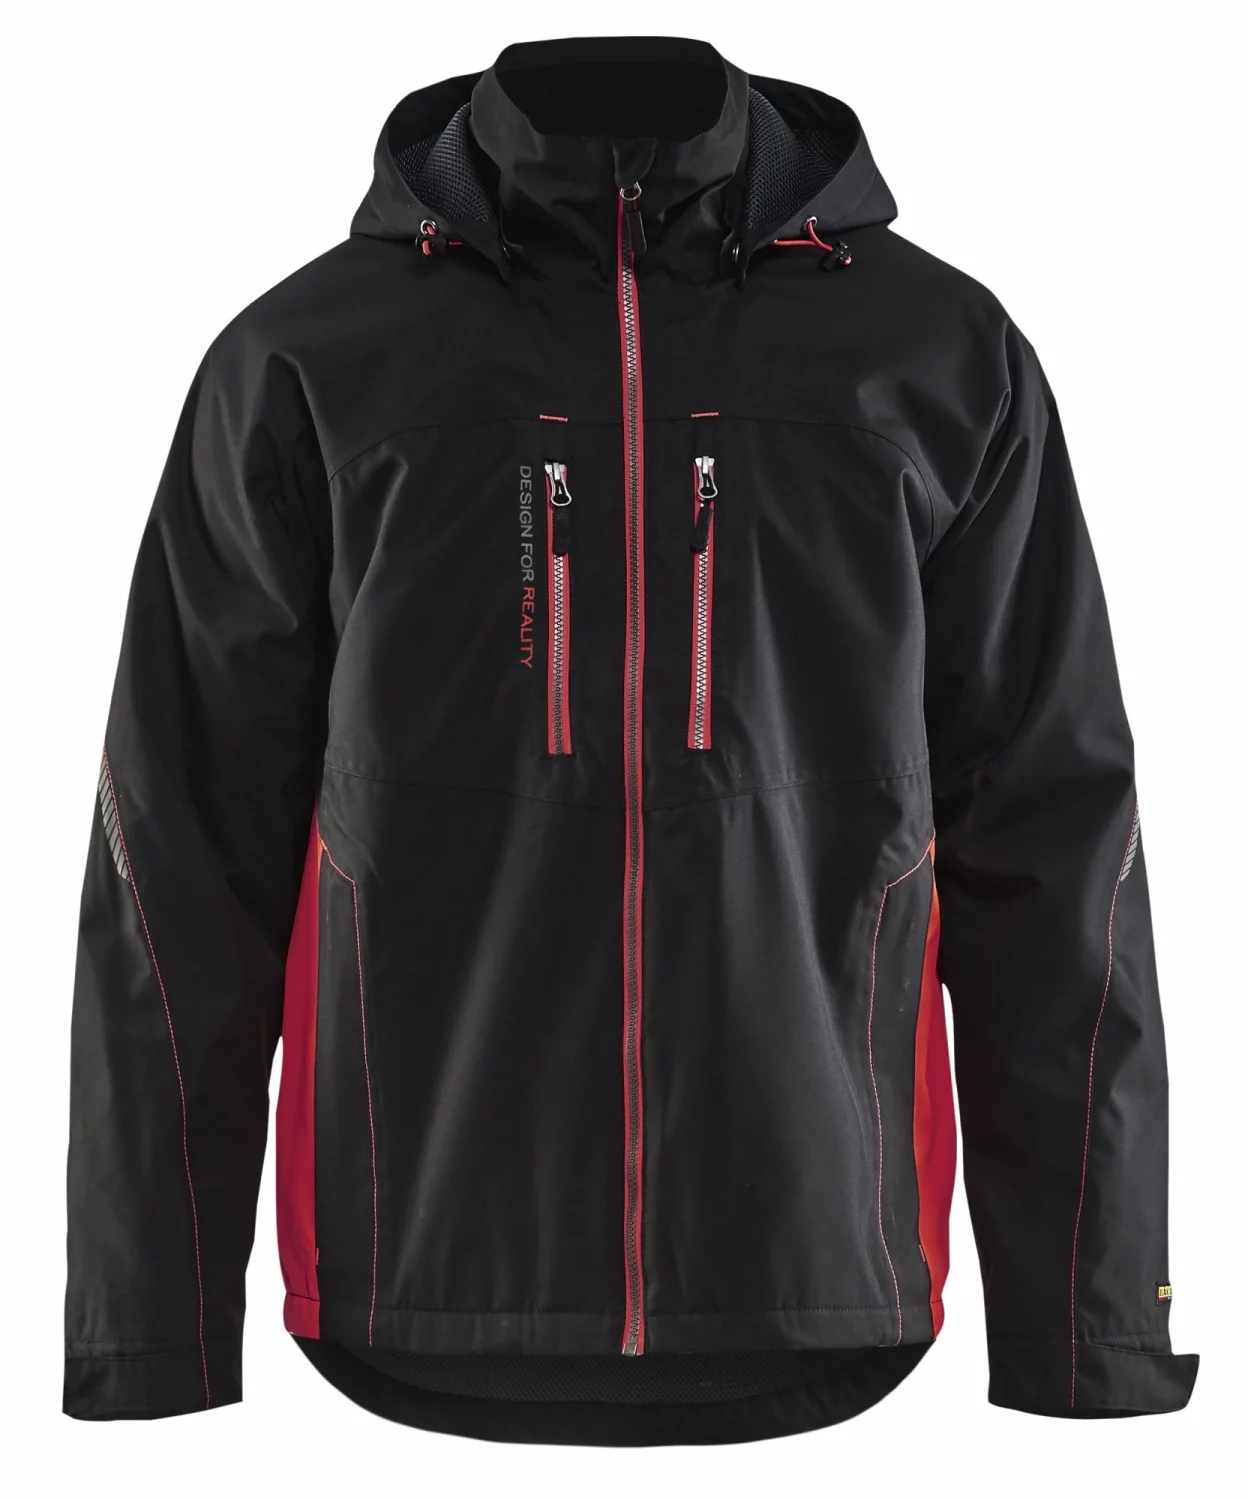 Blåkläder 4890 Lichtgewicht winterjas - Zwart/rood - Maat S